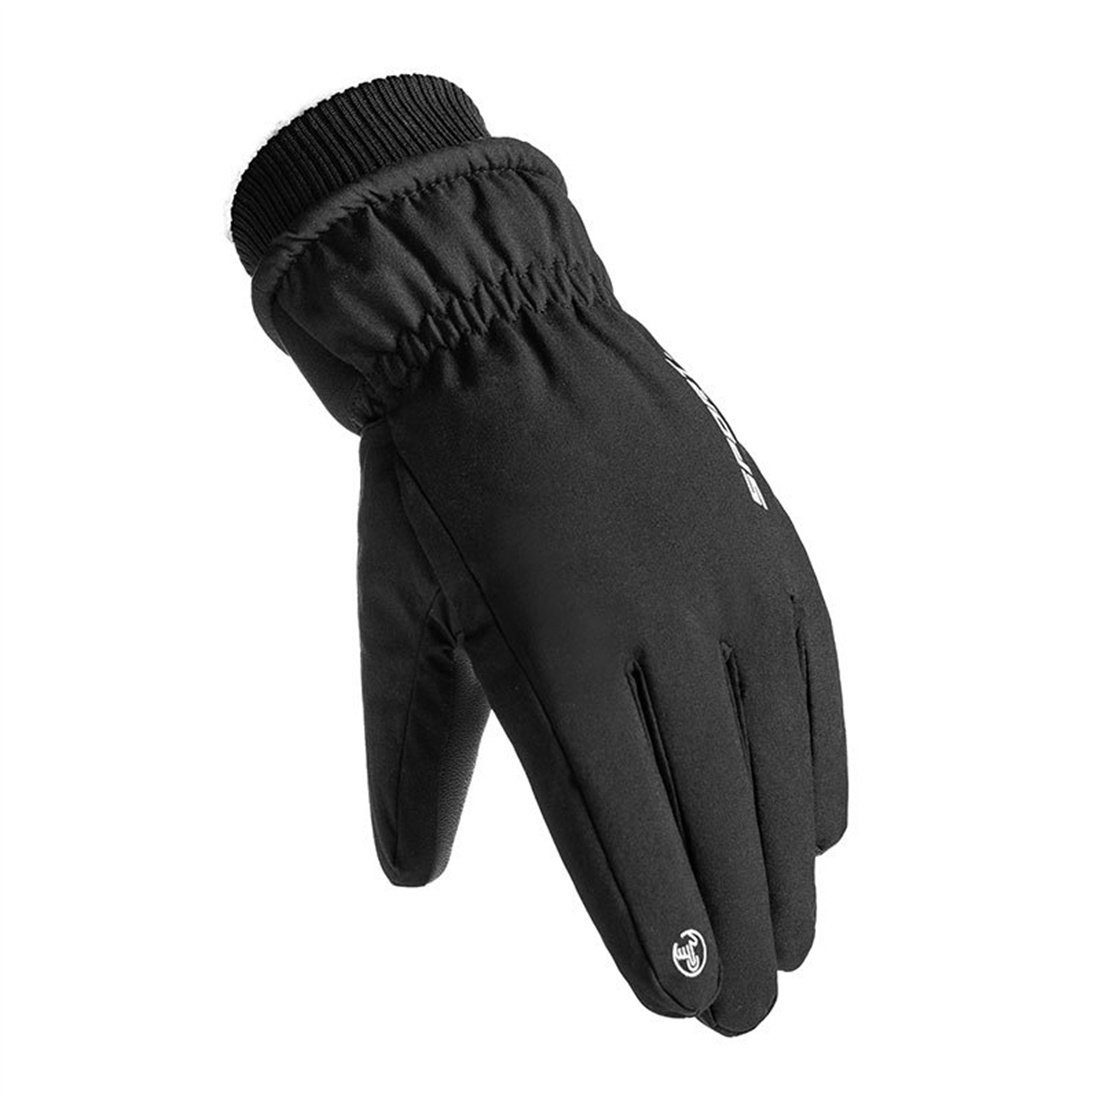 Winddichte Handschuhe Skihandschuhe mitTouchscreen,unisex DÖRÖY dunkelgrau Winter-Skihandschuhe,warme